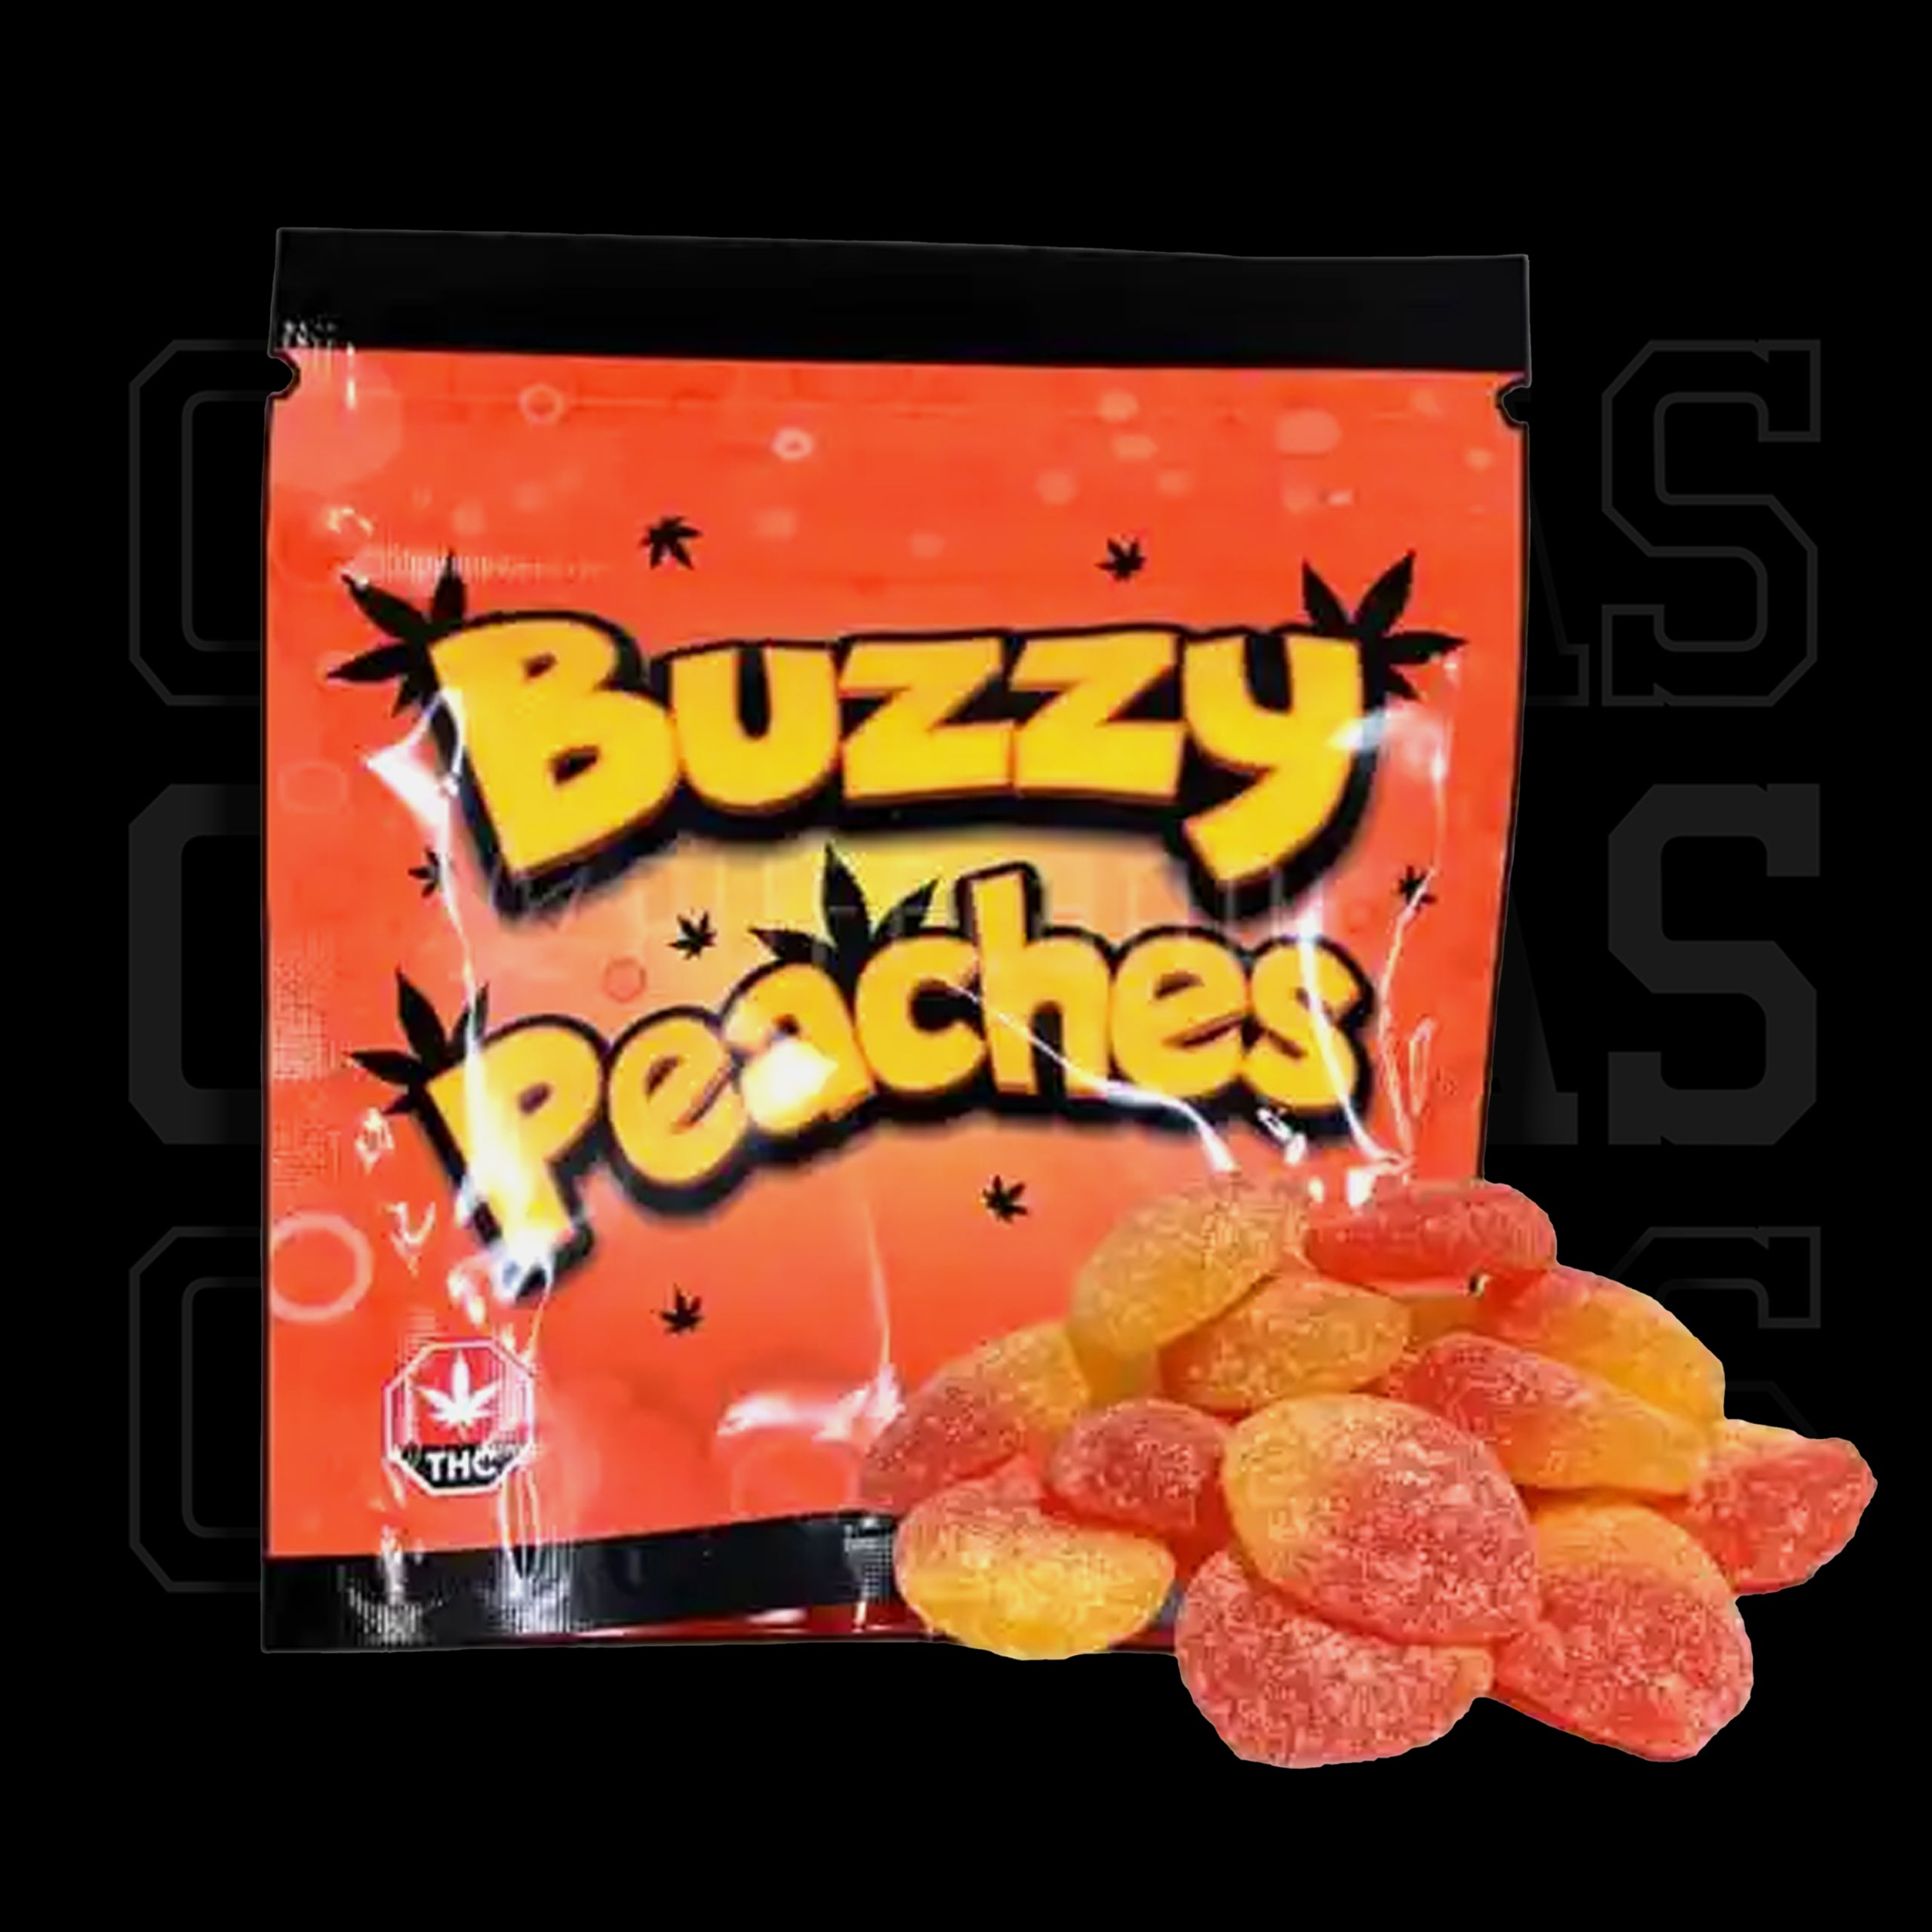 Buzzy Peaches